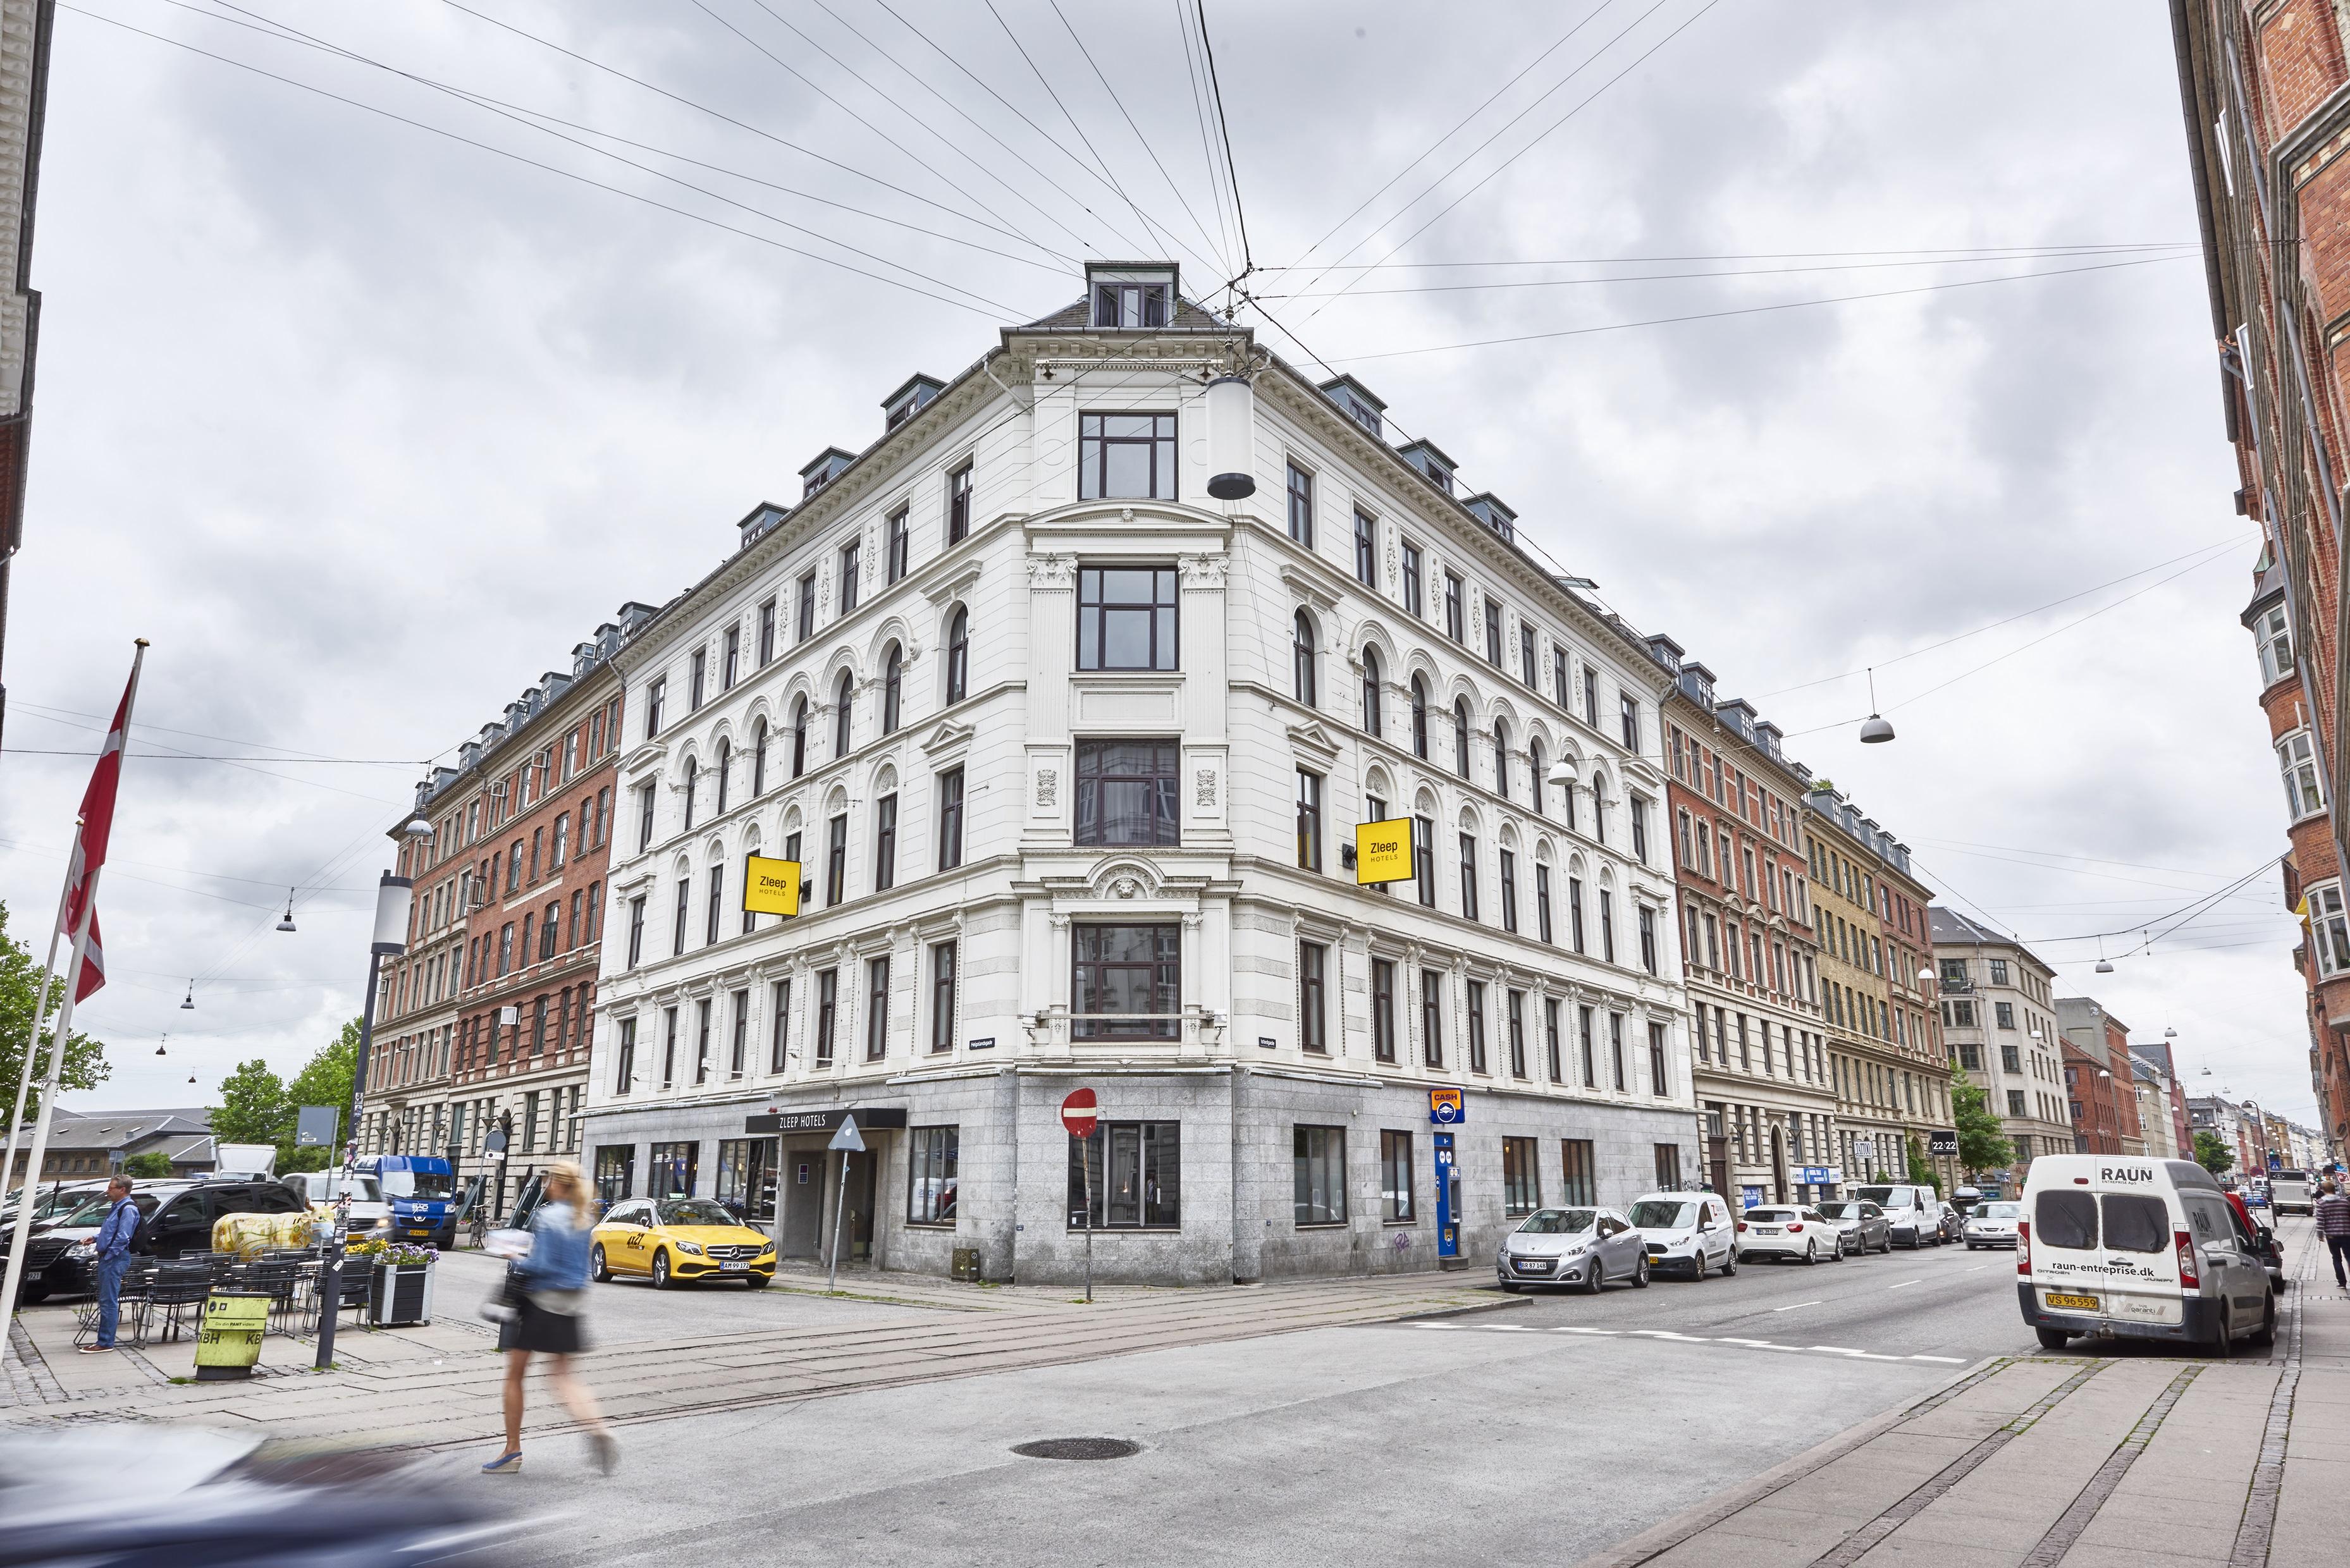 Zleep Hotel Copenhagen City Εξωτερικό φωτογραφία